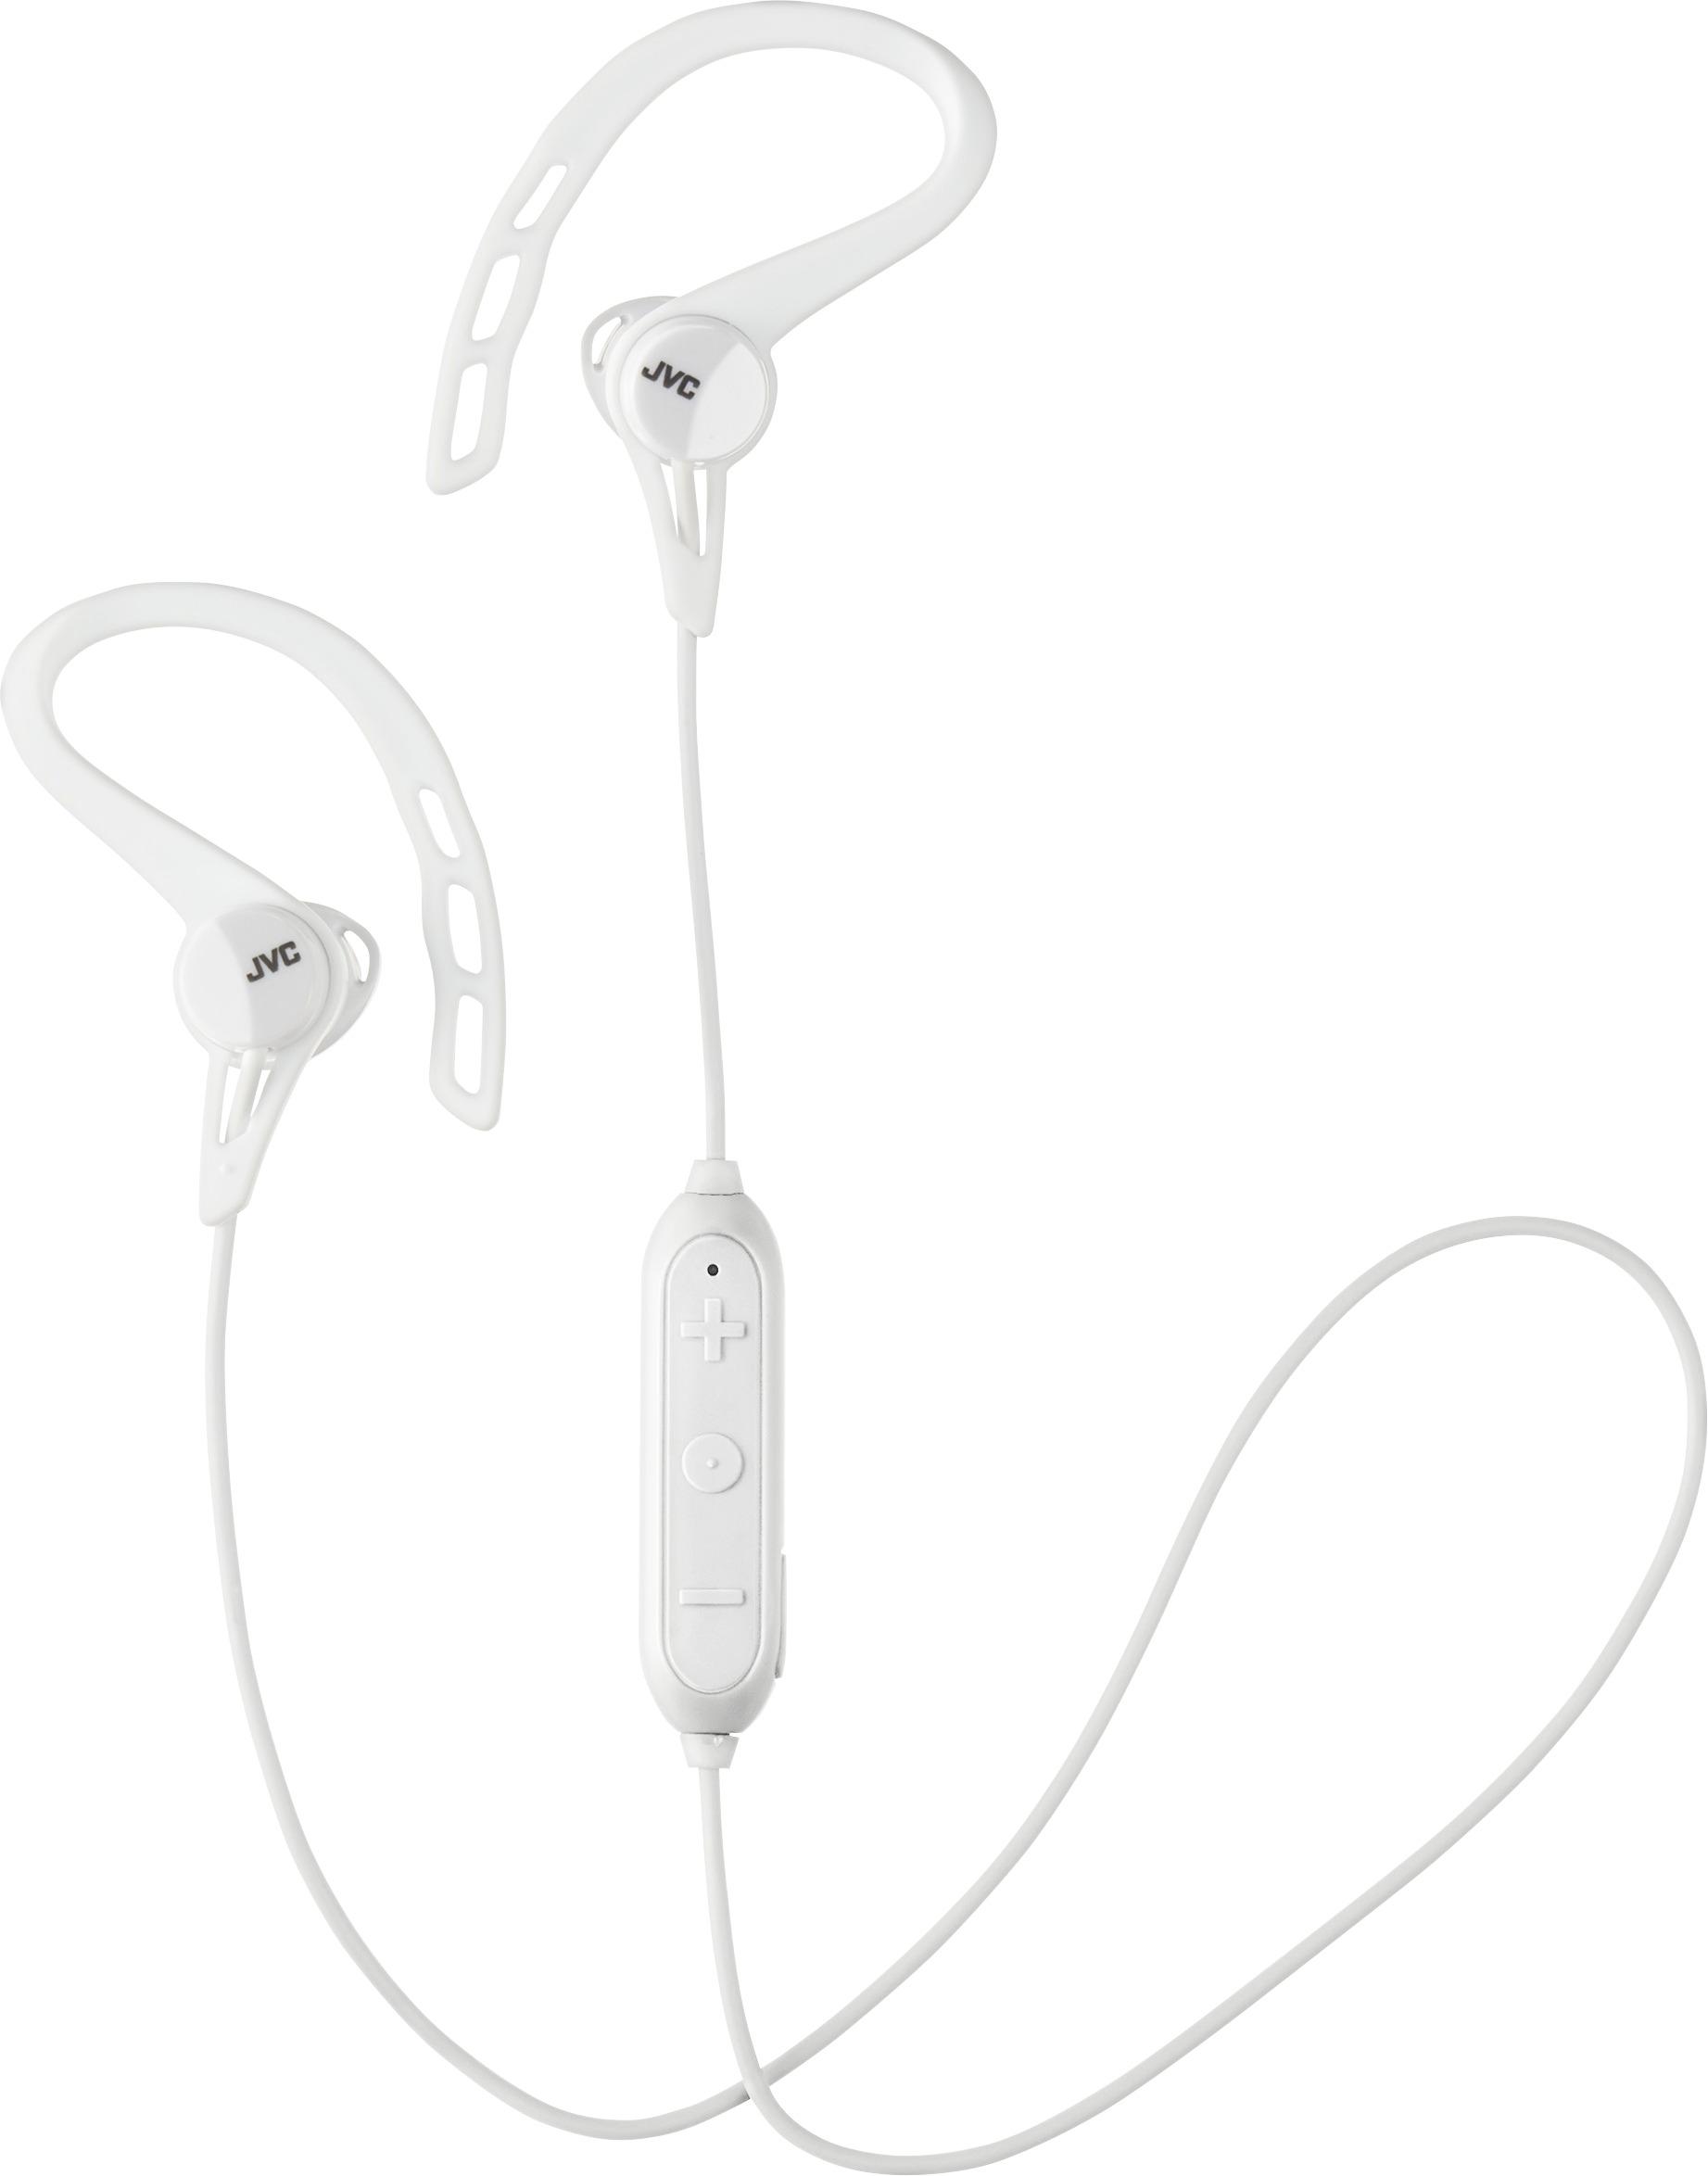 JVC - HA EC20BT Wireless In-Ear Headphones (iOS) - White was $39.99 now $25.99 (35.0% off)